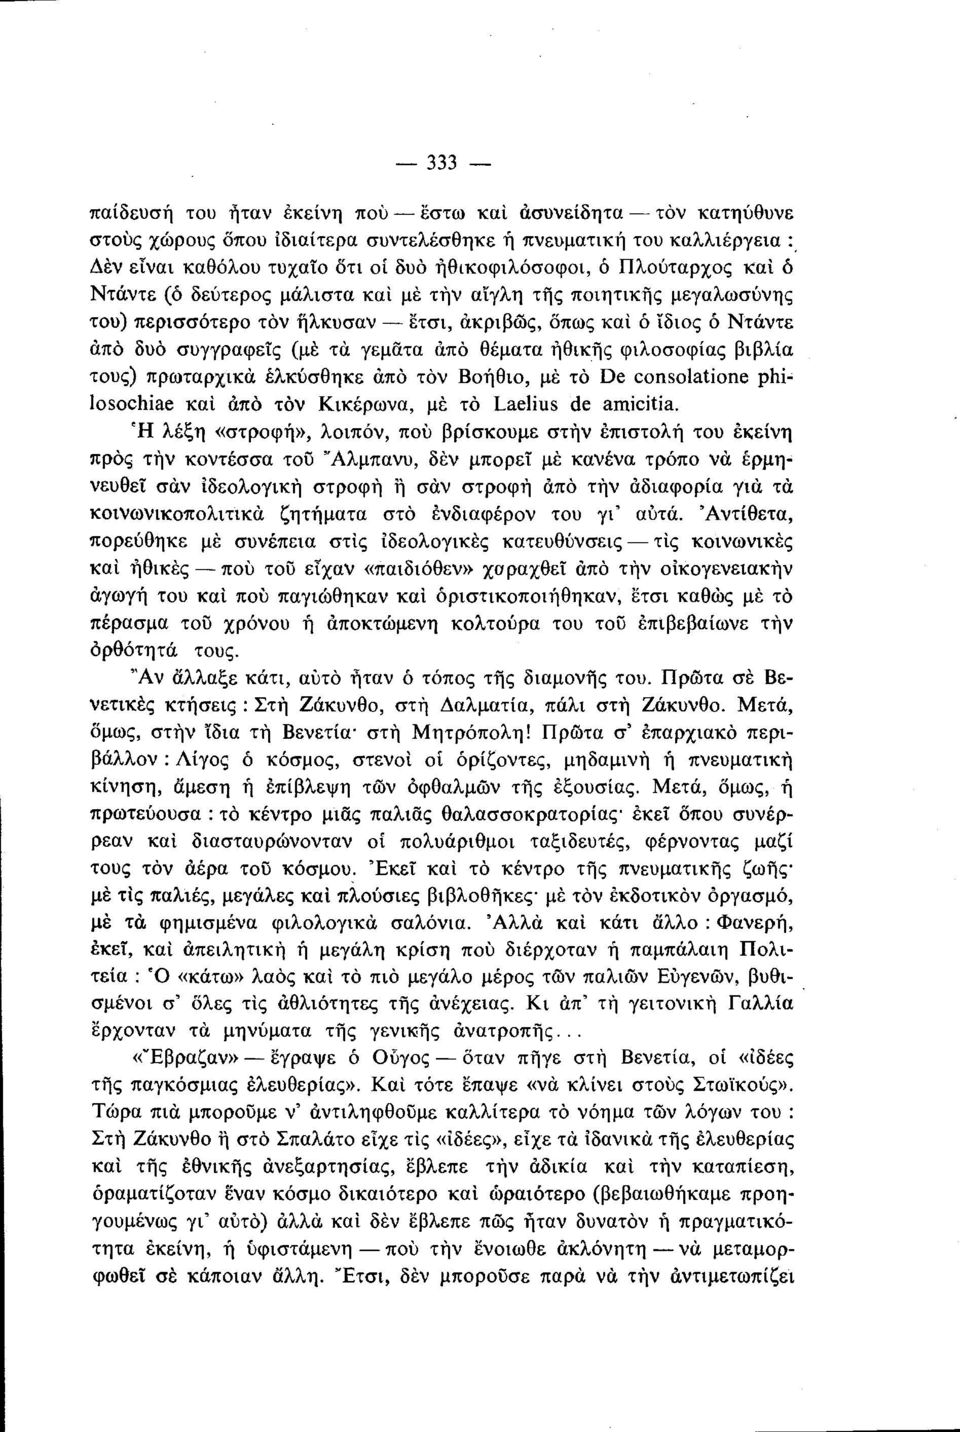 θέματα ηθικής φιλοσοφίας βιβλία τους) πρωταρχικά έλκύσθηκε άπό τον Βοήθιο, με το De consolatone philosochiae καί άπό τον Κικέρωνα, με το Laelius de amicitia.